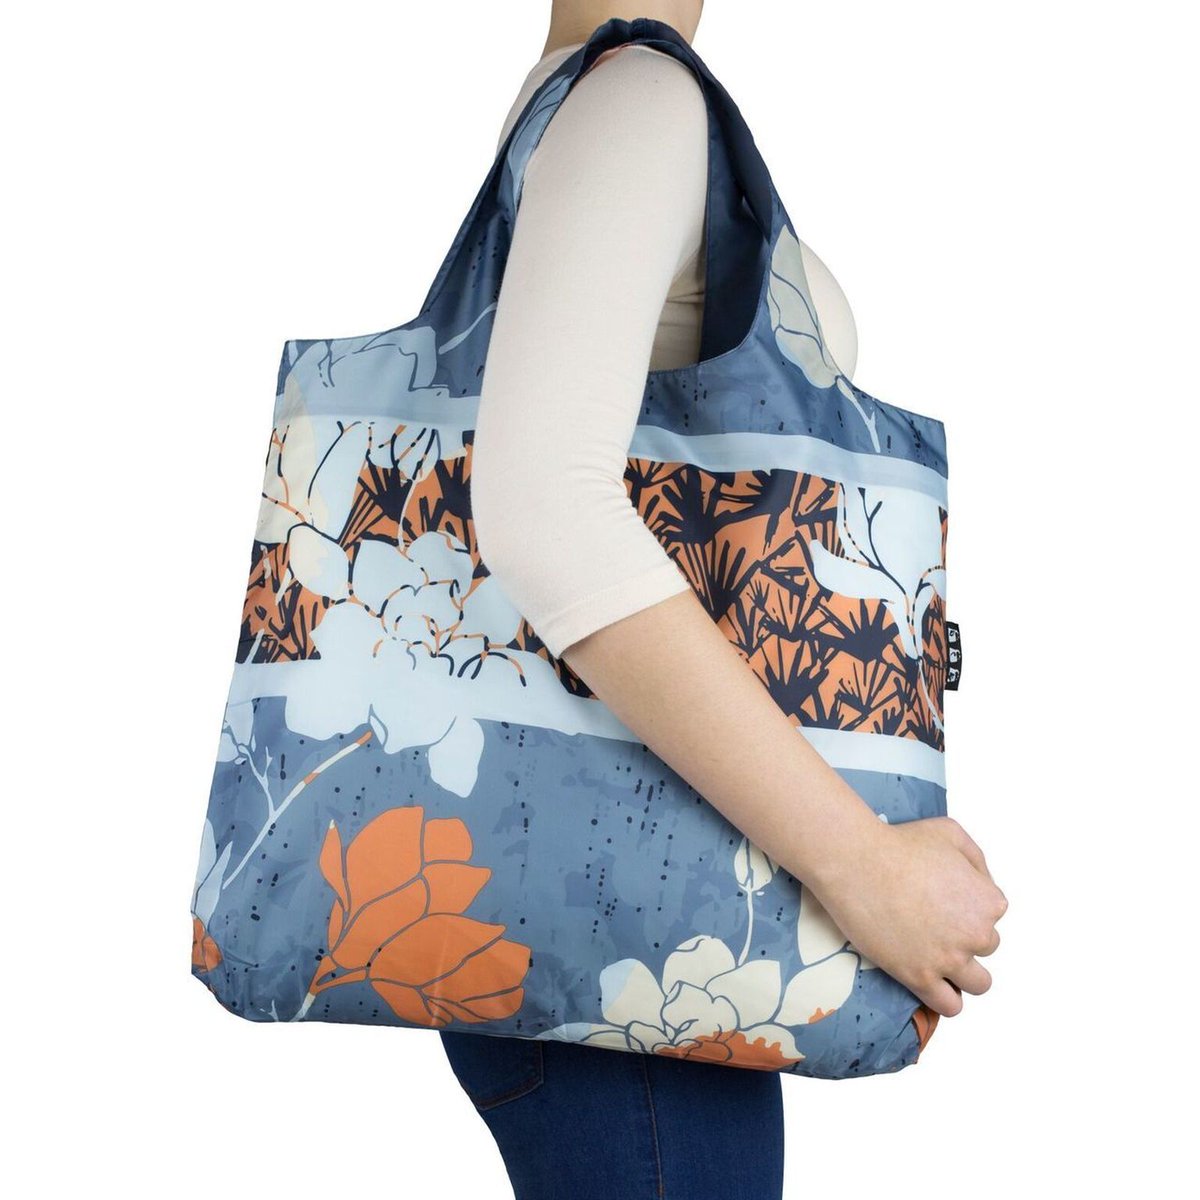 Envirosax reusable roll-up foldable shoulder shopping bag; Oriental Spice bag number 5 #Envirosax #reusablebag #reuse #Oriental #Spice #giftidea #reusable #floralbag #shoulderbag #tote #bag #Bbuys ebay.co.uk/itm/2719665418… via
@eBay_UK